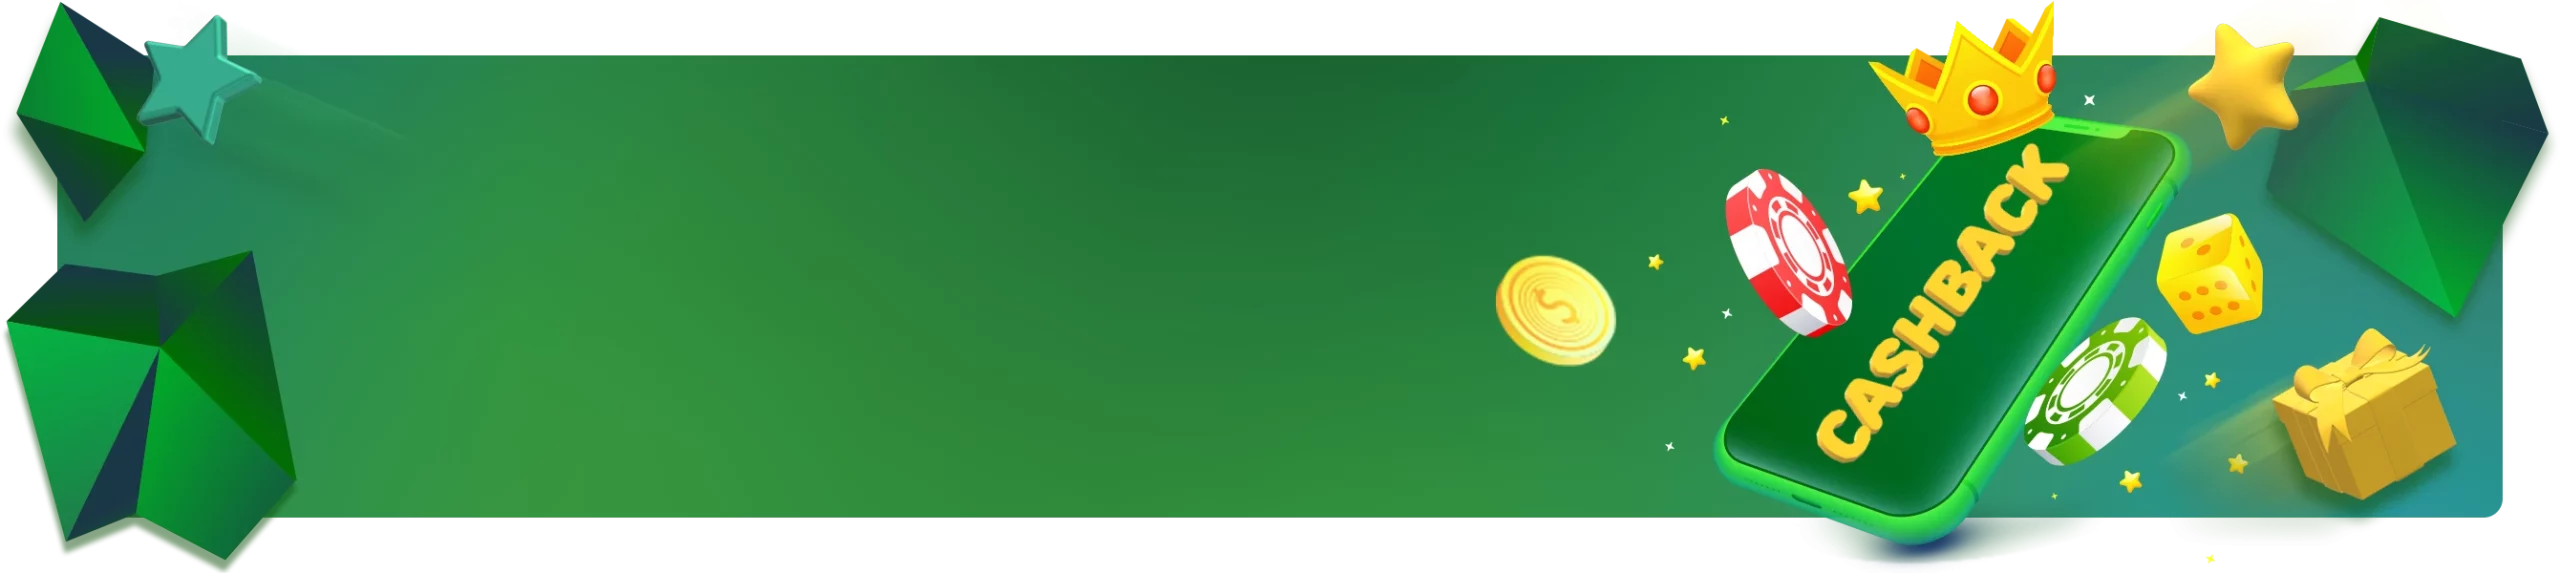 Banner promocional com fundo verde, anunciando 'Cashback semanal de até 120%'. Inclui ícones de uma ficha de cassino, uma coroa, uma moeda de ouro e um presente, além de um botão amarelo 'Receber'.